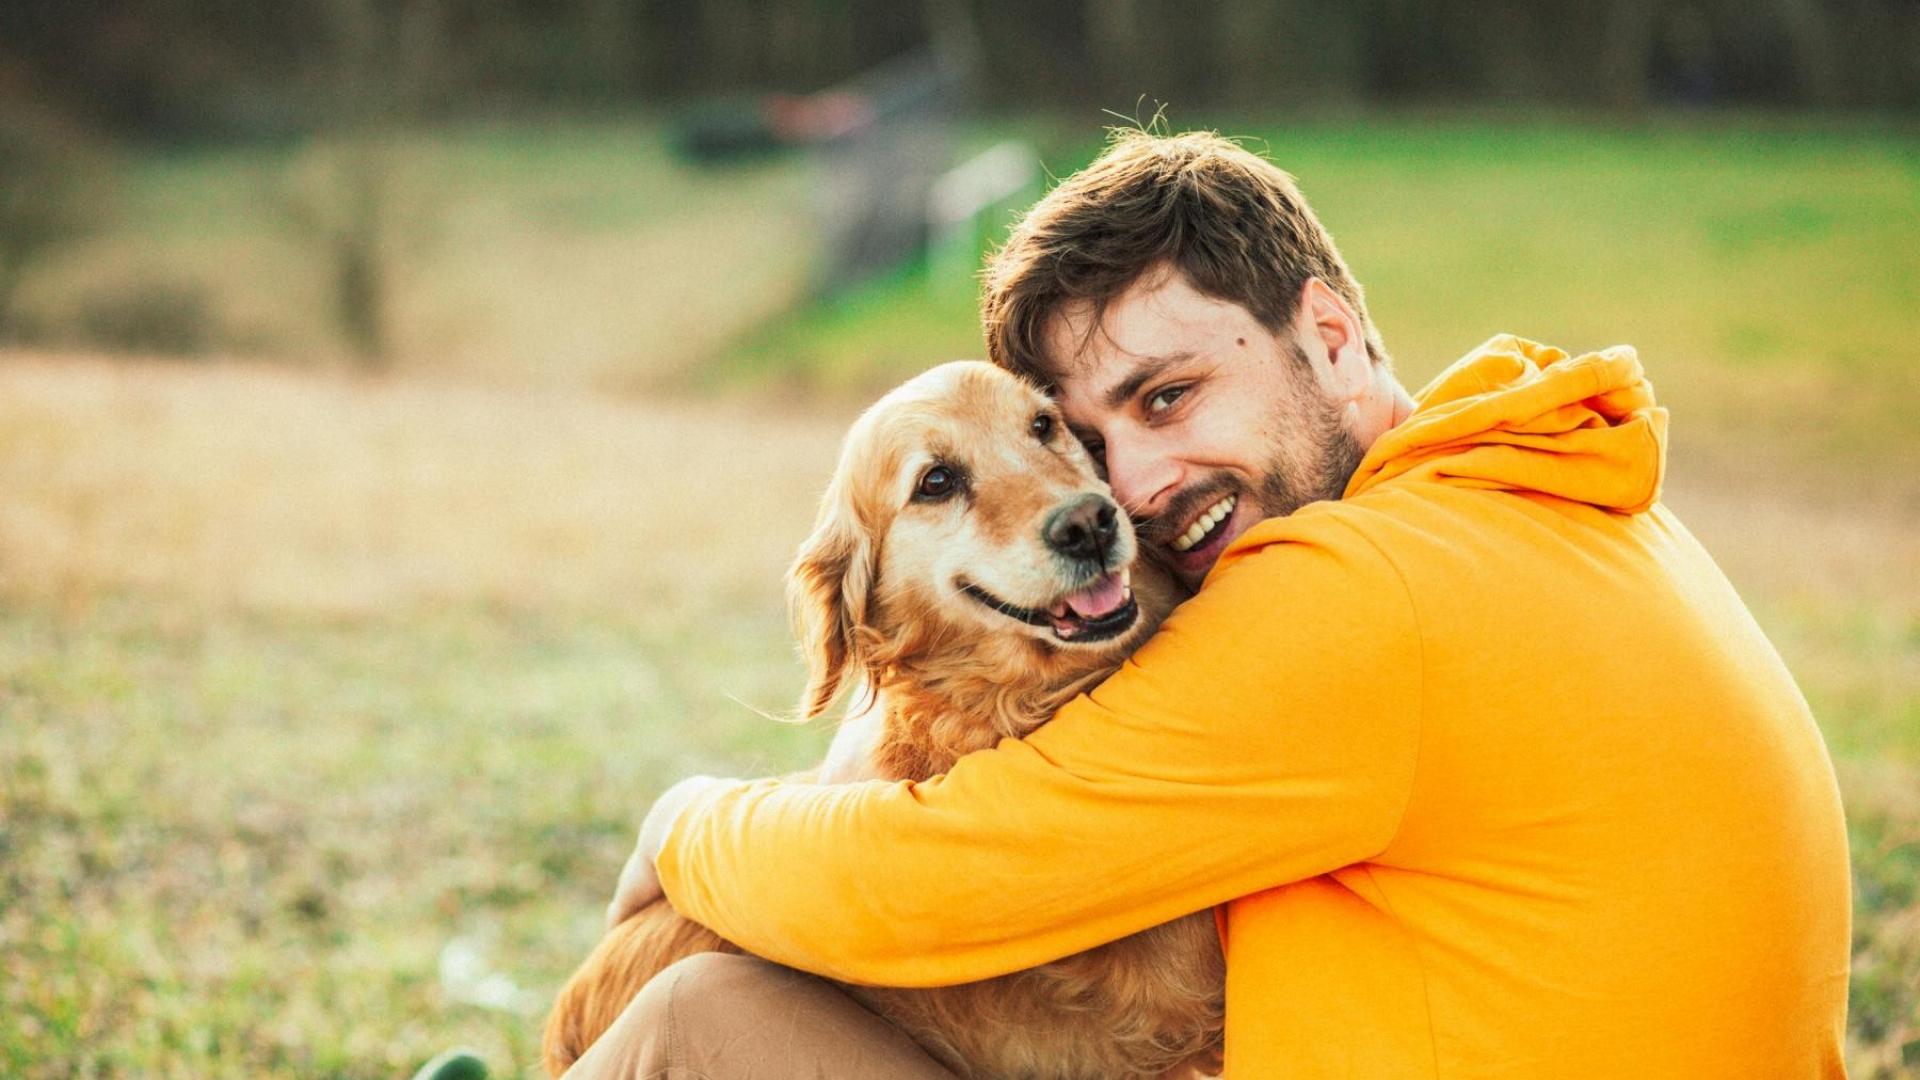 Auf dem Bild ist ein glücklicher Mann imt seinem Hund auf einer Wiese abgebildet.